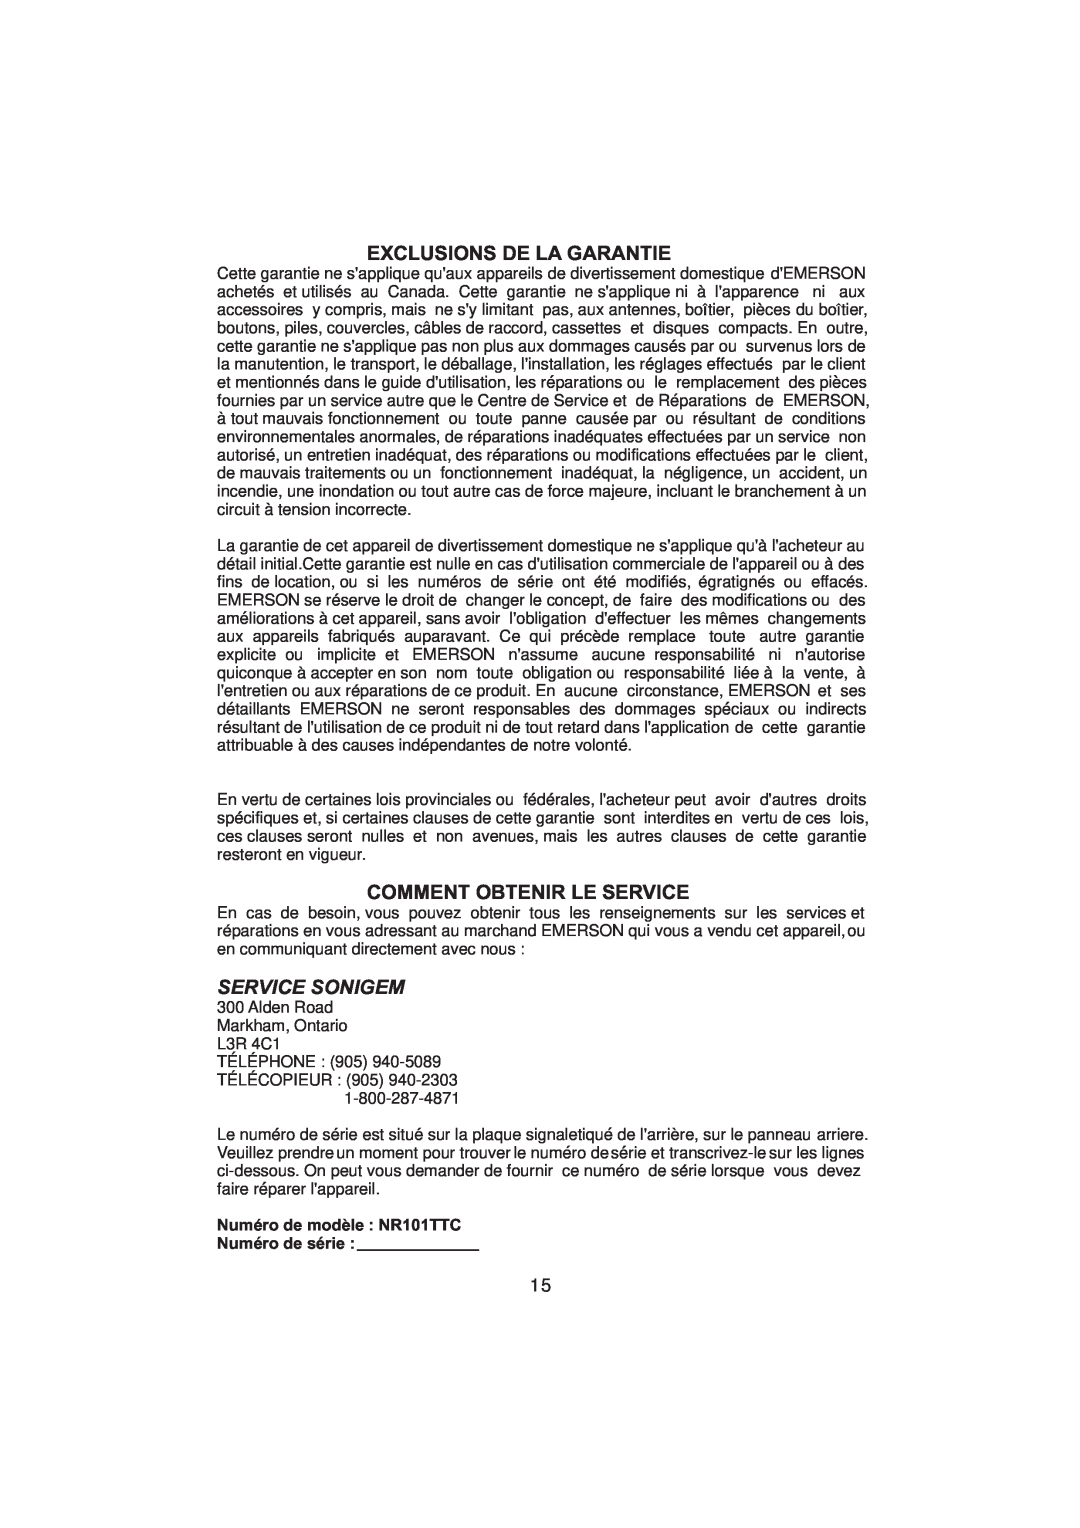 Emerson owner manual Exclusions De La Garantie, Comment Obtenir Le Service, Numero de modele NR101TTC Numero de serie 